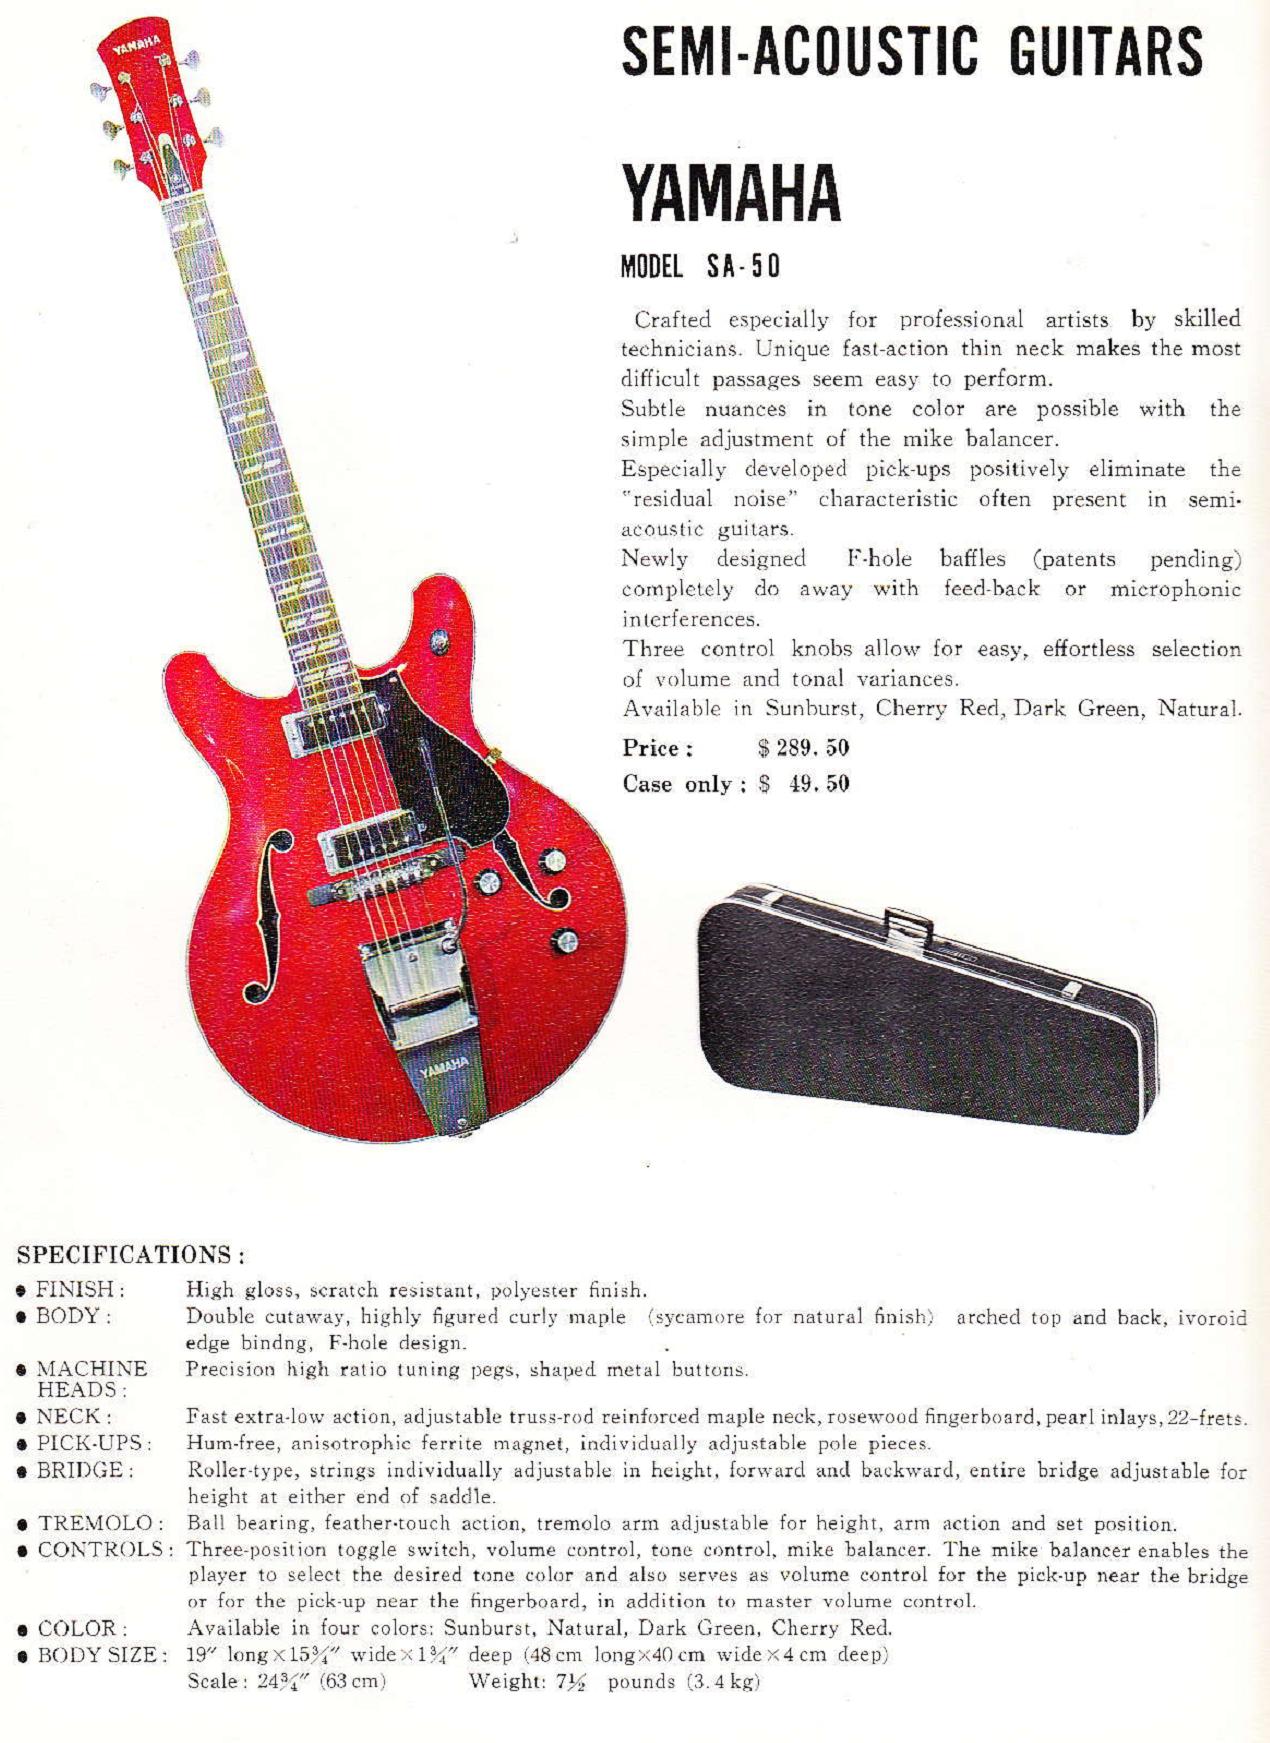 SA-50 (1968 Yahama Guitar Catalog - Page 8)